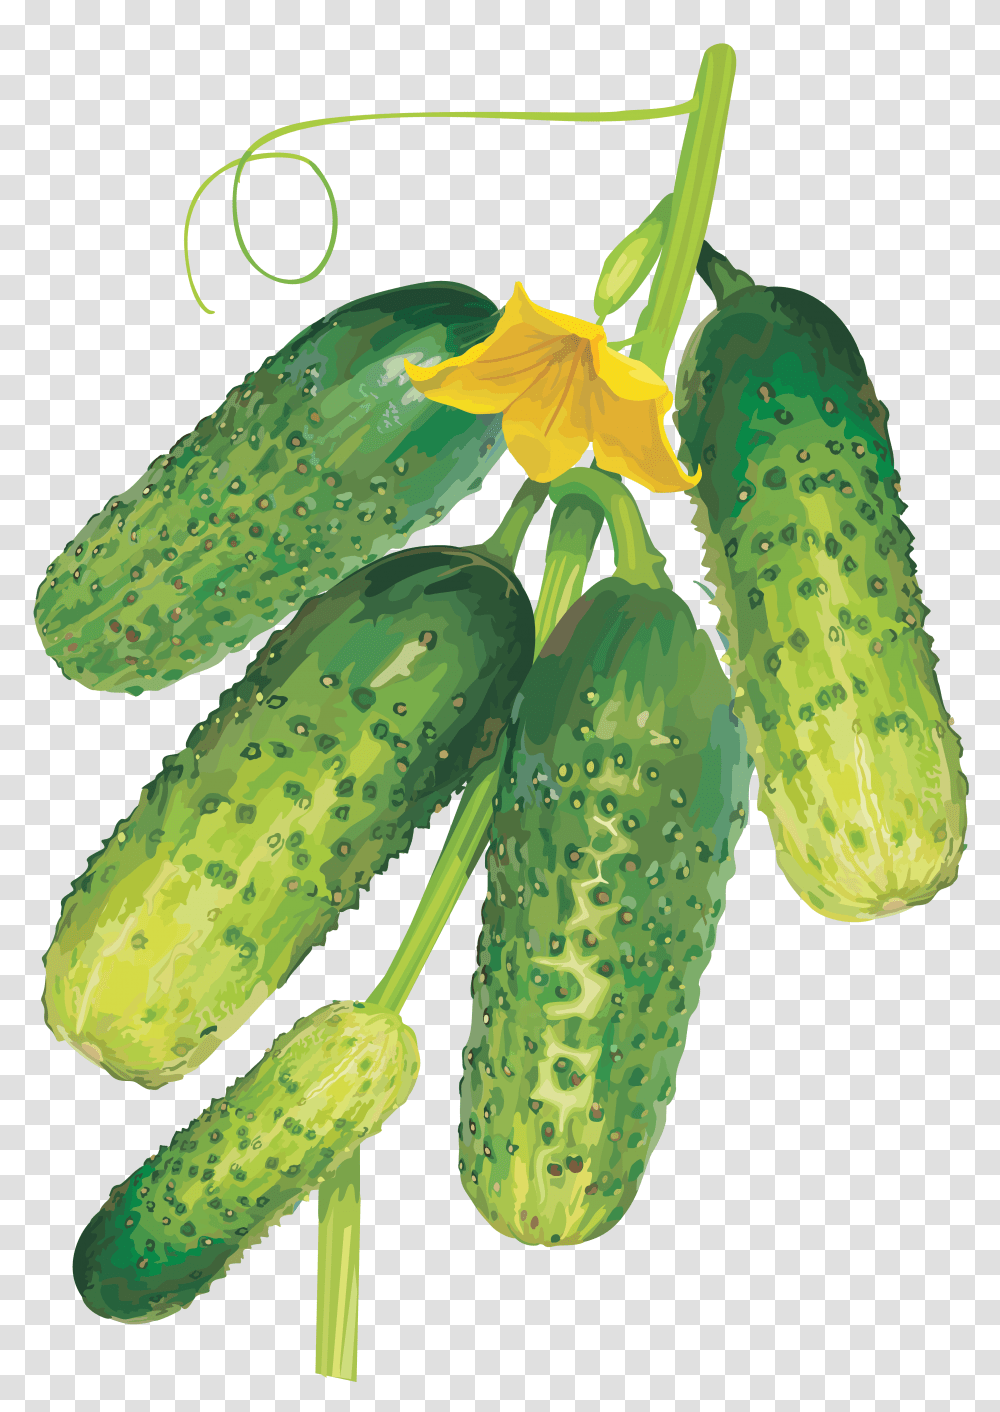 Cucumber, Vegetable, Plant, Food, Pickle Transparent Png